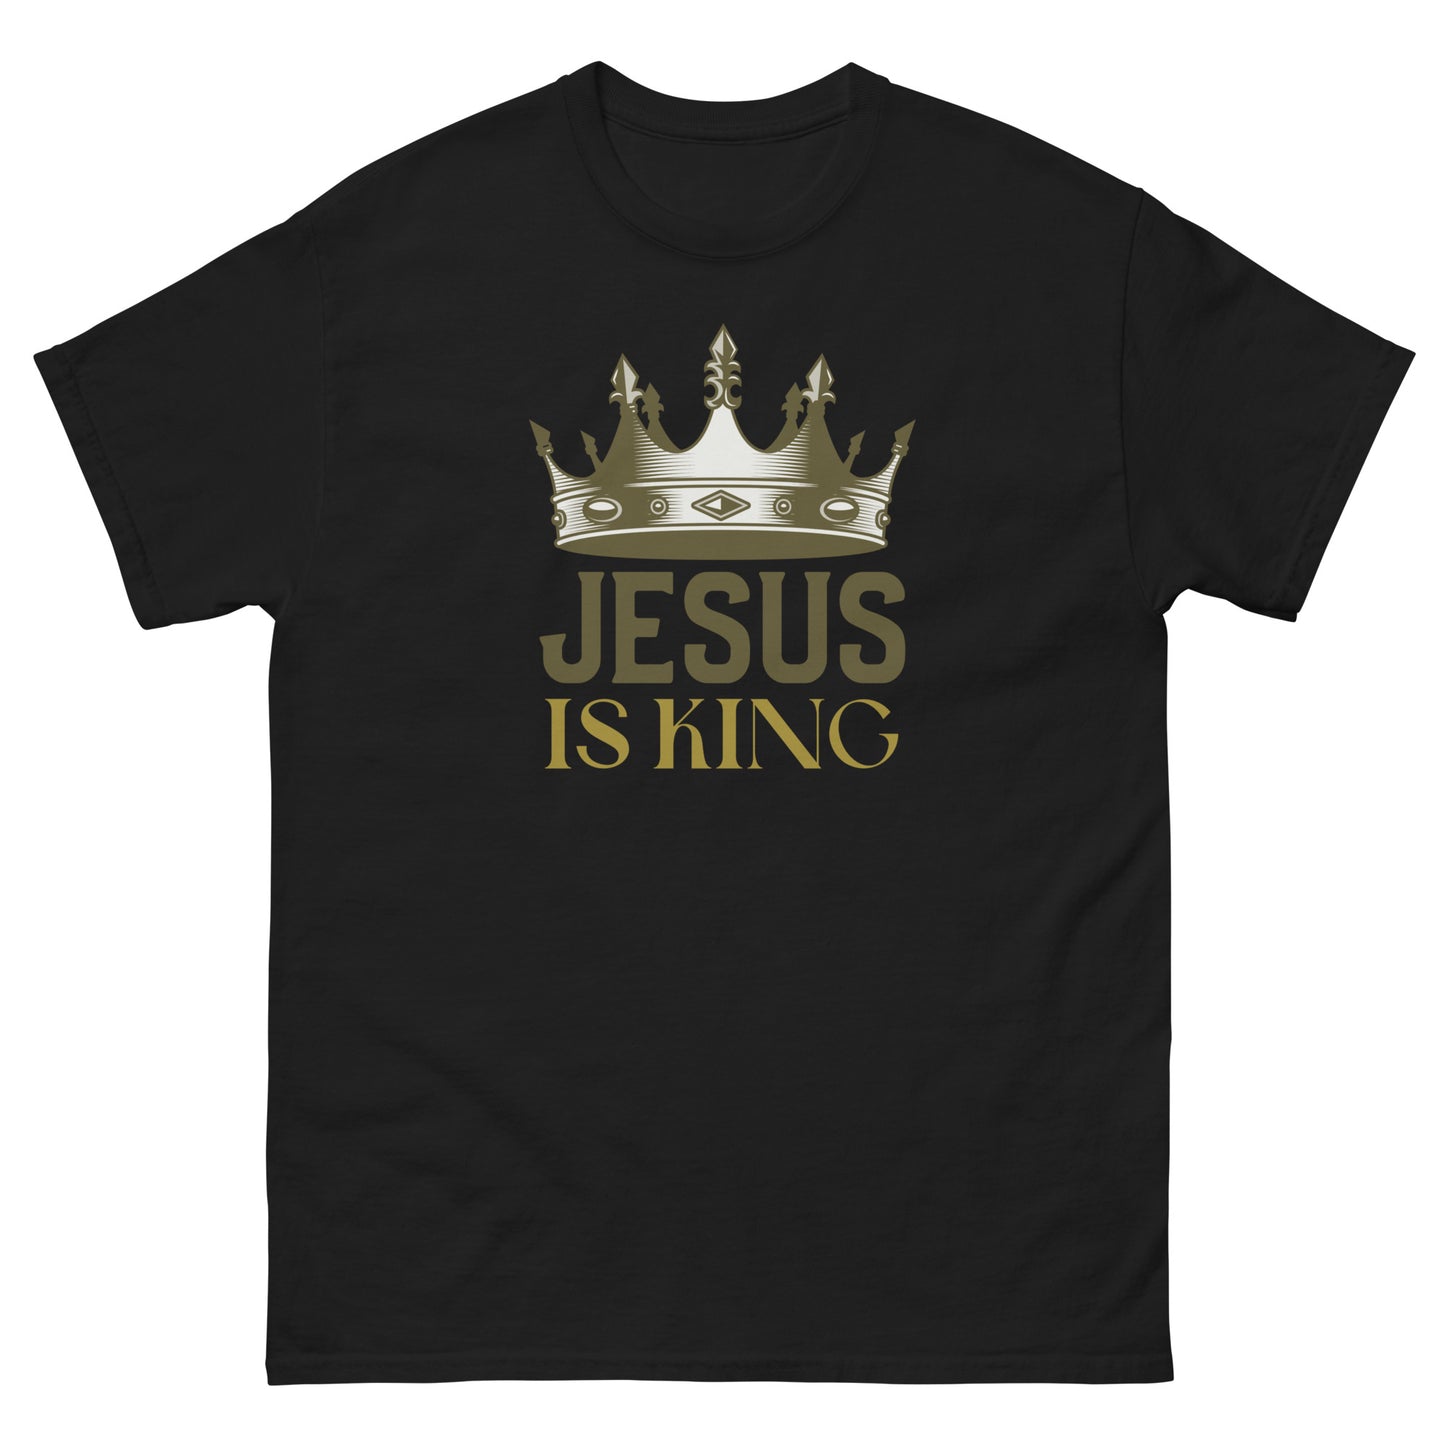 Jesus is KING 2.0 - Men's classic tee